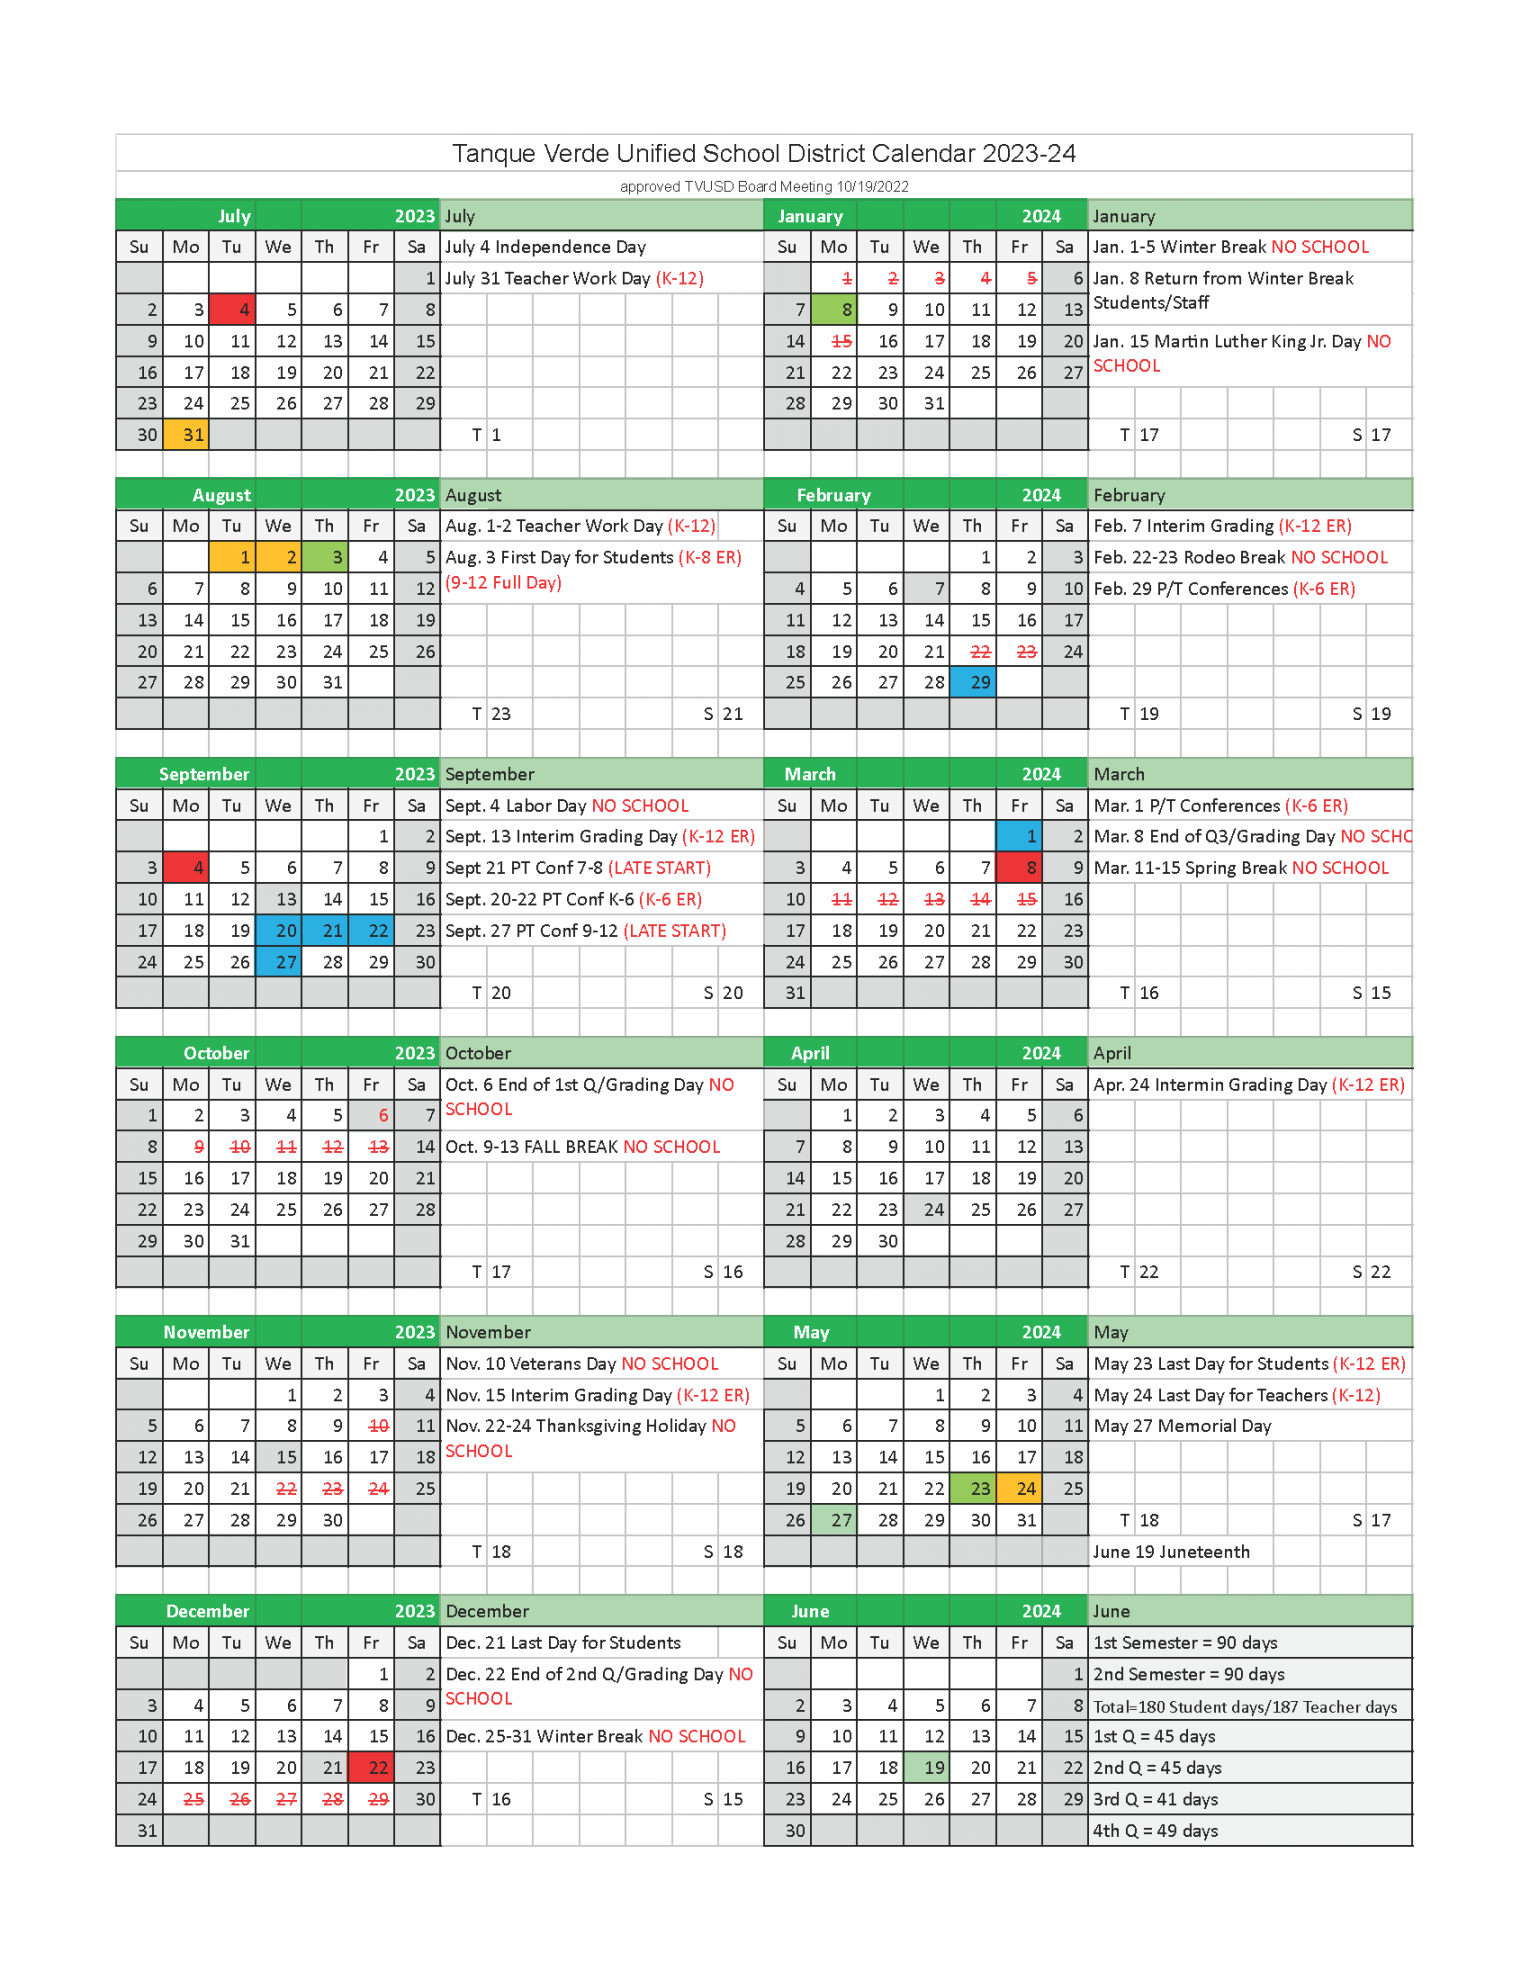 School Year Calendar - Tanque Verde Unified School District